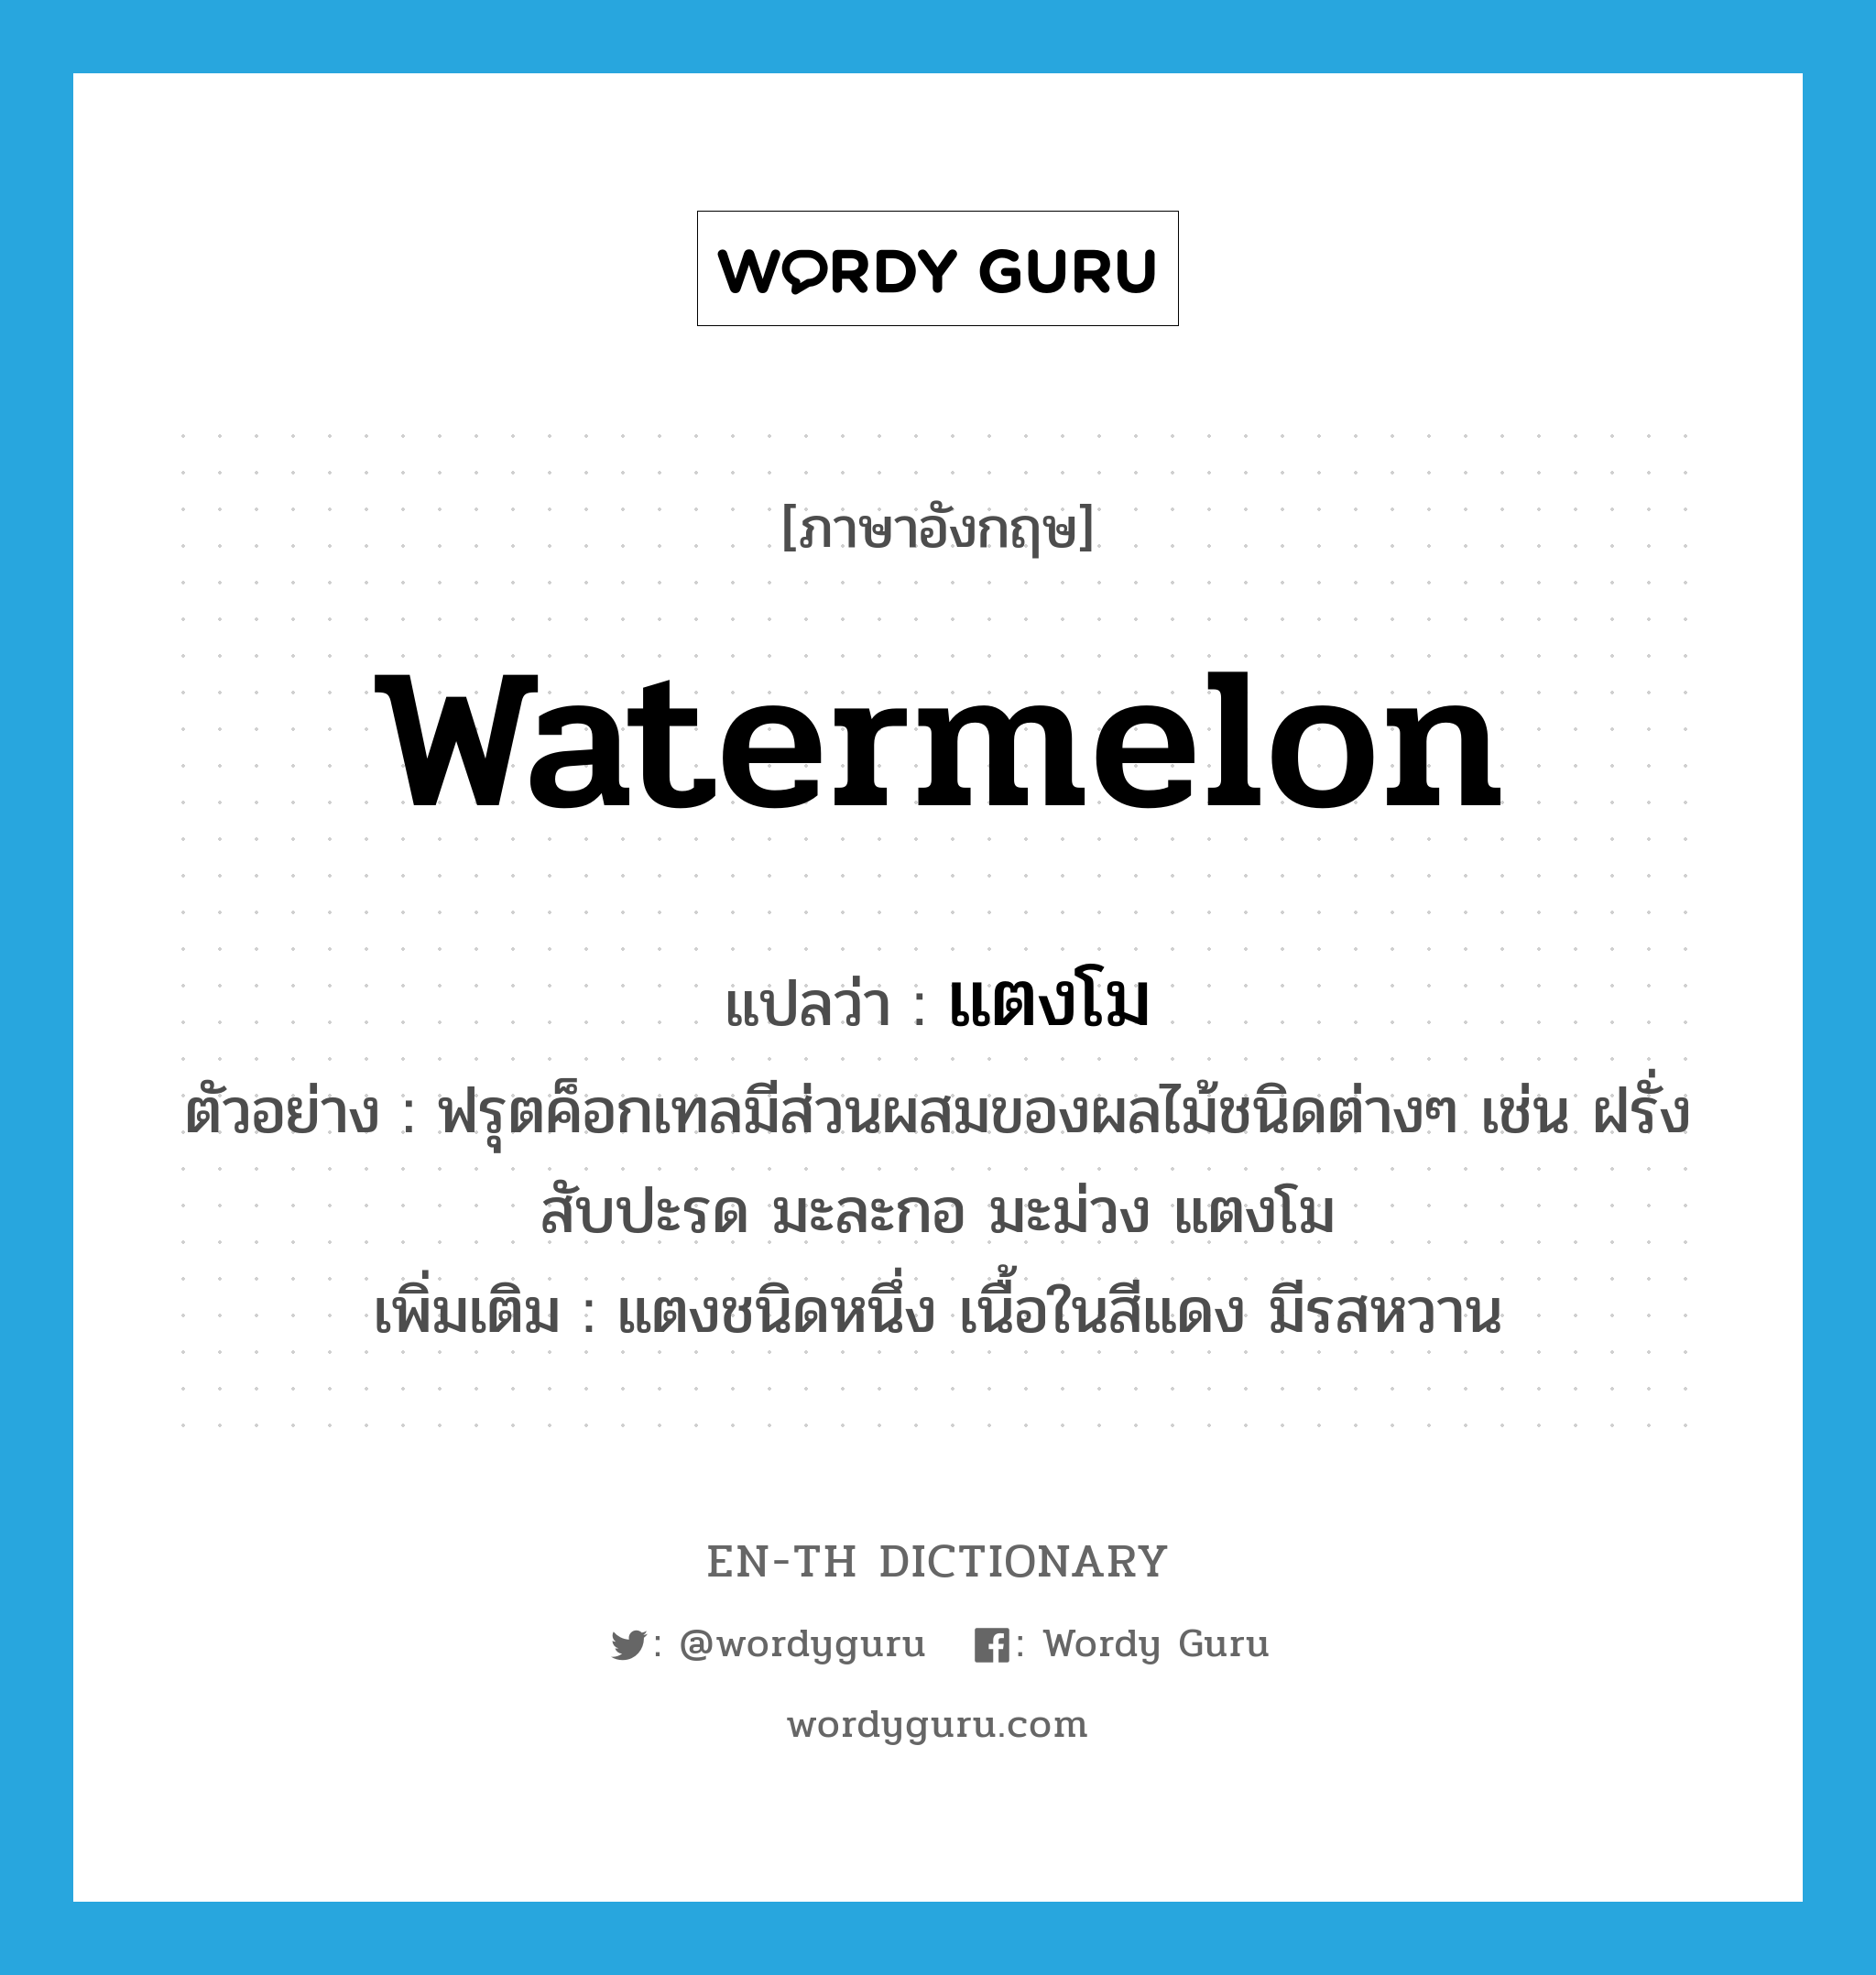 watermelon แปลว่า?, คำศัพท์ภาษาอังกฤษ watermelon แปลว่า แตงโม ประเภท N ตัวอย่าง ฟรุตค็อกเทลมีส่วนผสมของผลไม้ชนิดต่างๆ เช่น ฝรั่ง สับปะรด มะละกอ มะม่วง แตงโม เพิ่มเติม แตงชนิดหนึ่ง เนื้อในสีแดง มีรสหวาน หมวด N